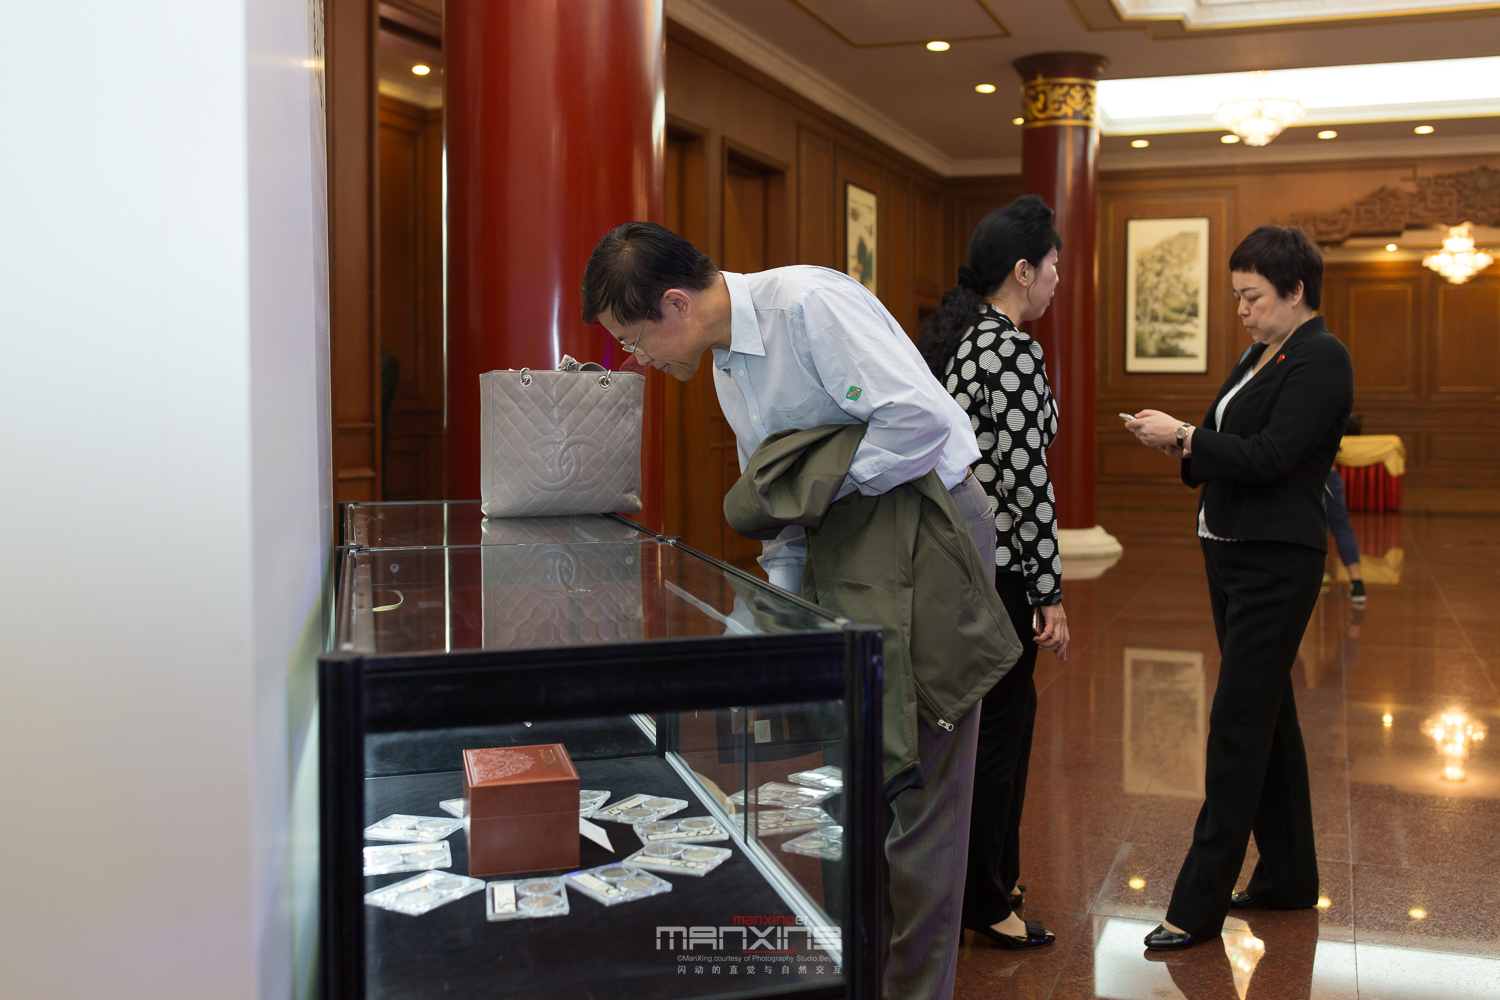 “纪念孙中山诞辰150周年百年银元珍藏套装”在京首发